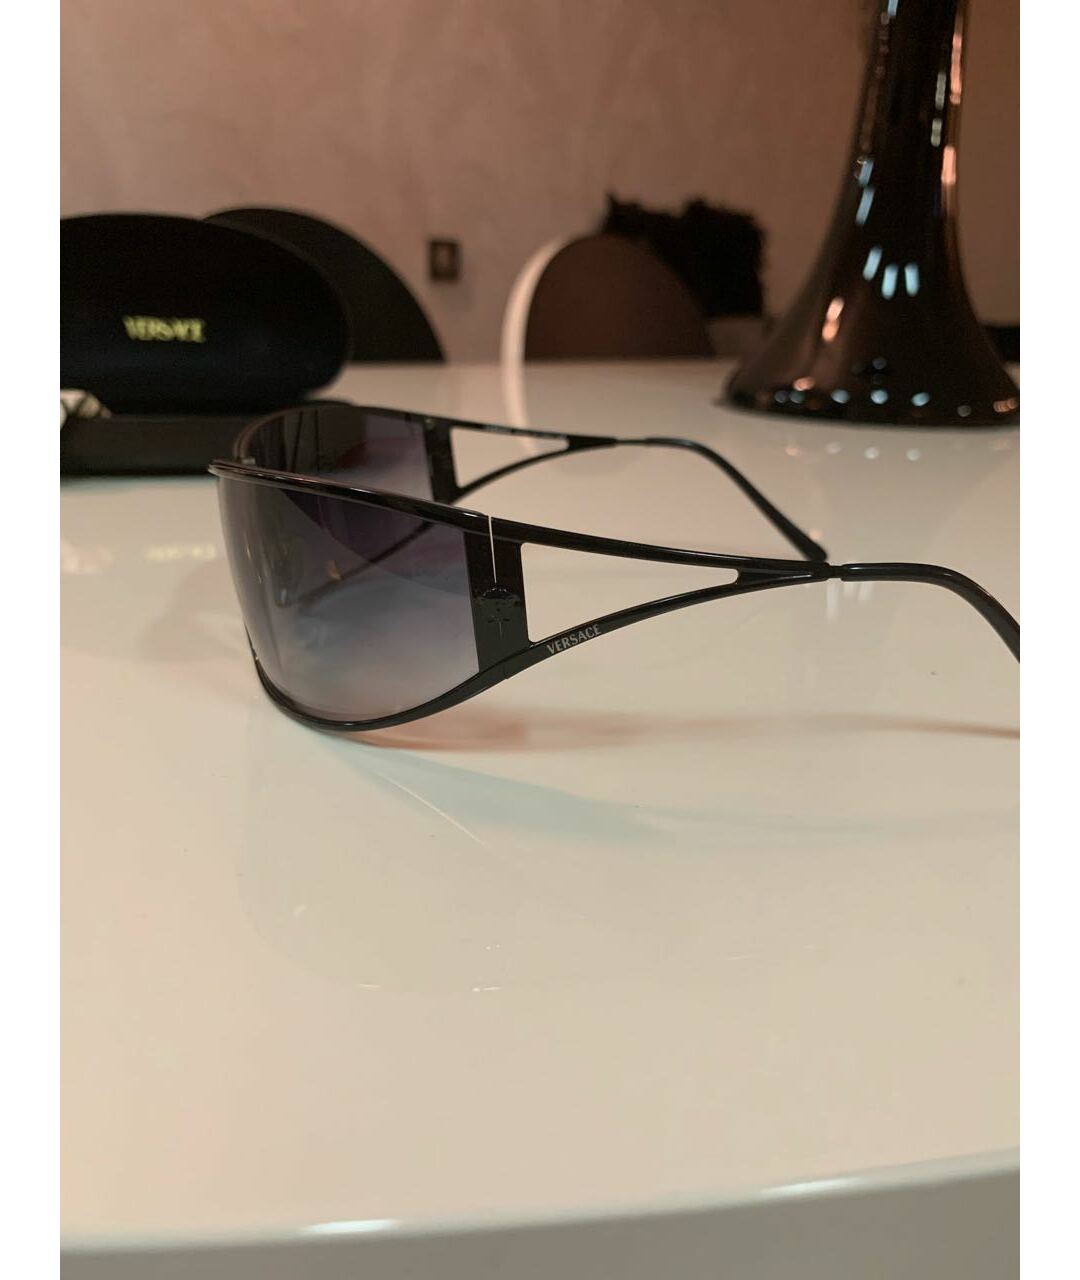 VERSACE Черные металлические солнцезащитные очки, фото 2